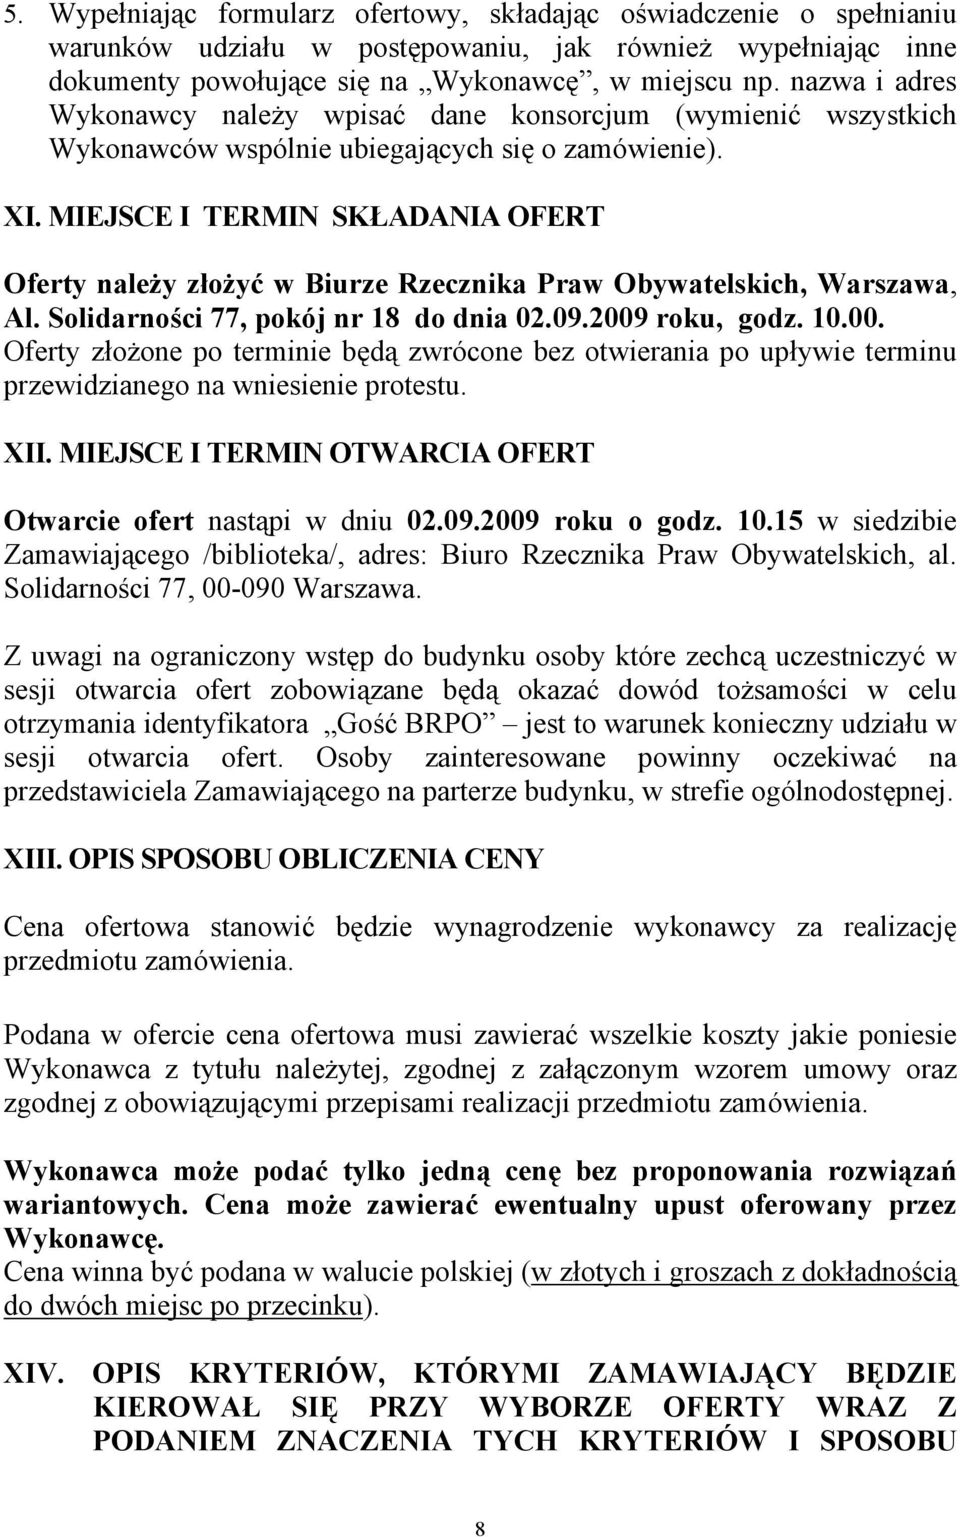 MIEJSCE I TERMIN SKŁADANIA OFERT Oferty należy złożyć w Biurze Rzecznika Praw Obywatelskich, Warszawa, Al. Solidarności 77, pokój nr 18 do dnia 02.09.2009